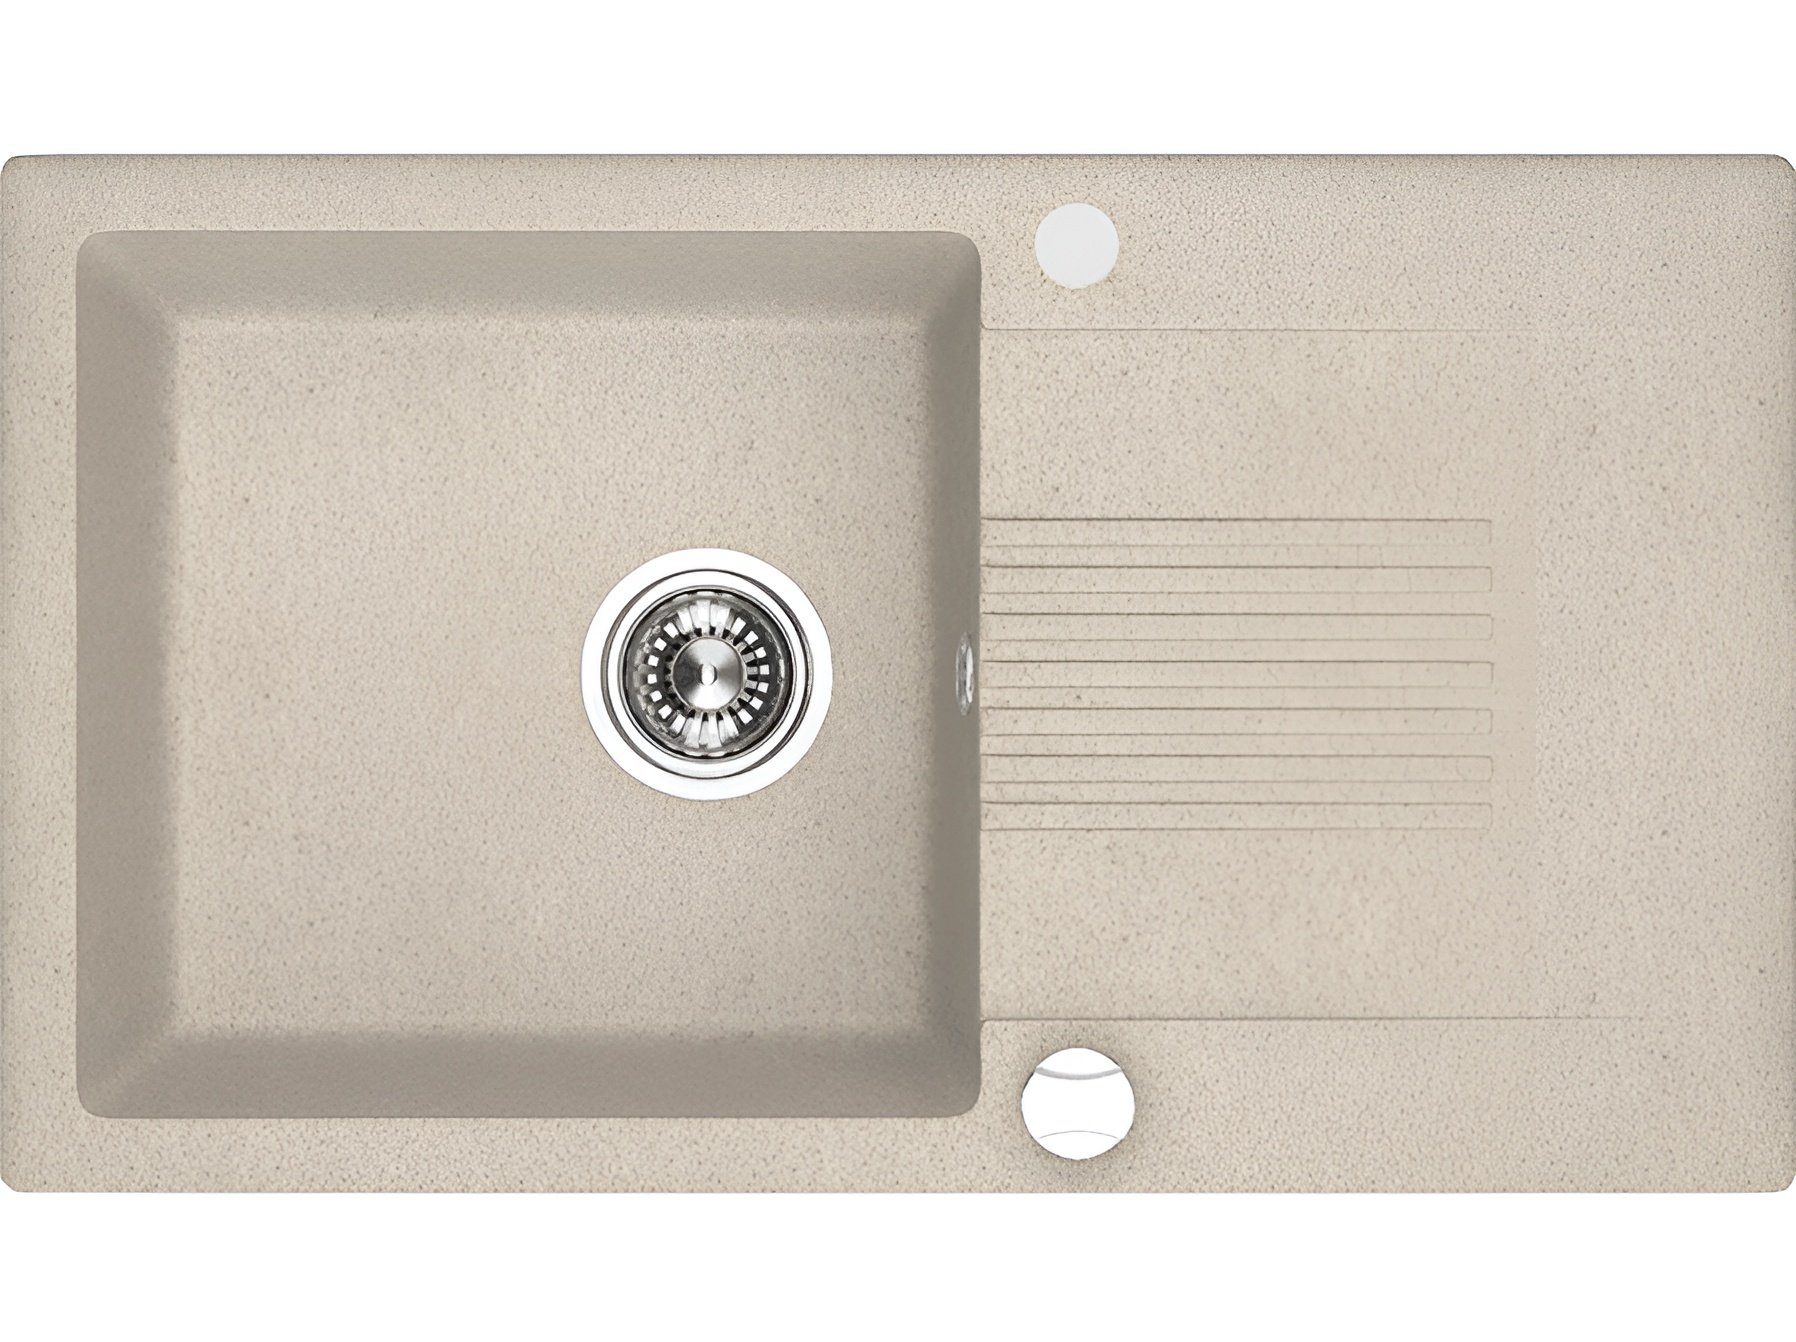 KOLMAN Küchenspüle Einzelbecken Celia Granitspüle, Rechteckig, 44/76 cm, Beige, Space Saving Siphon GRATIS